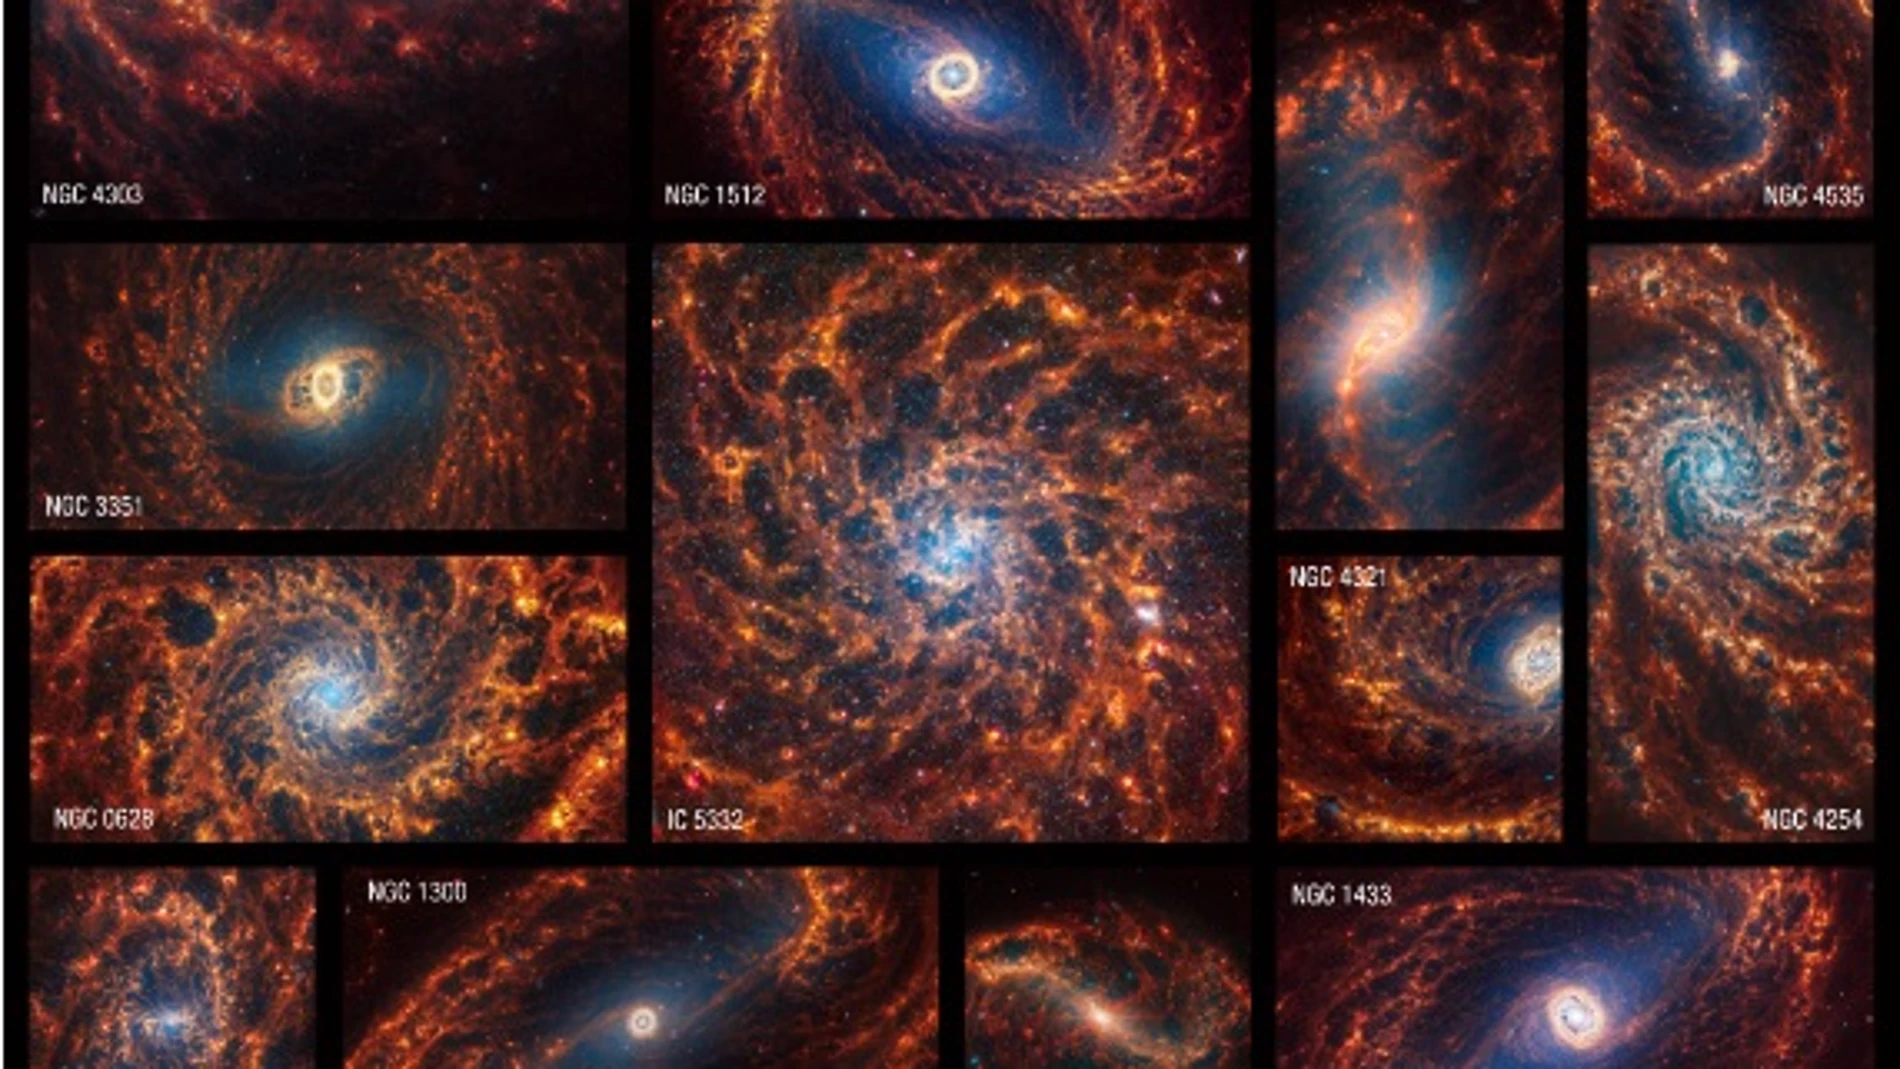 El telescopio de la NASA James Wbb revela la estructura de 19 galaxias espirales cercanas